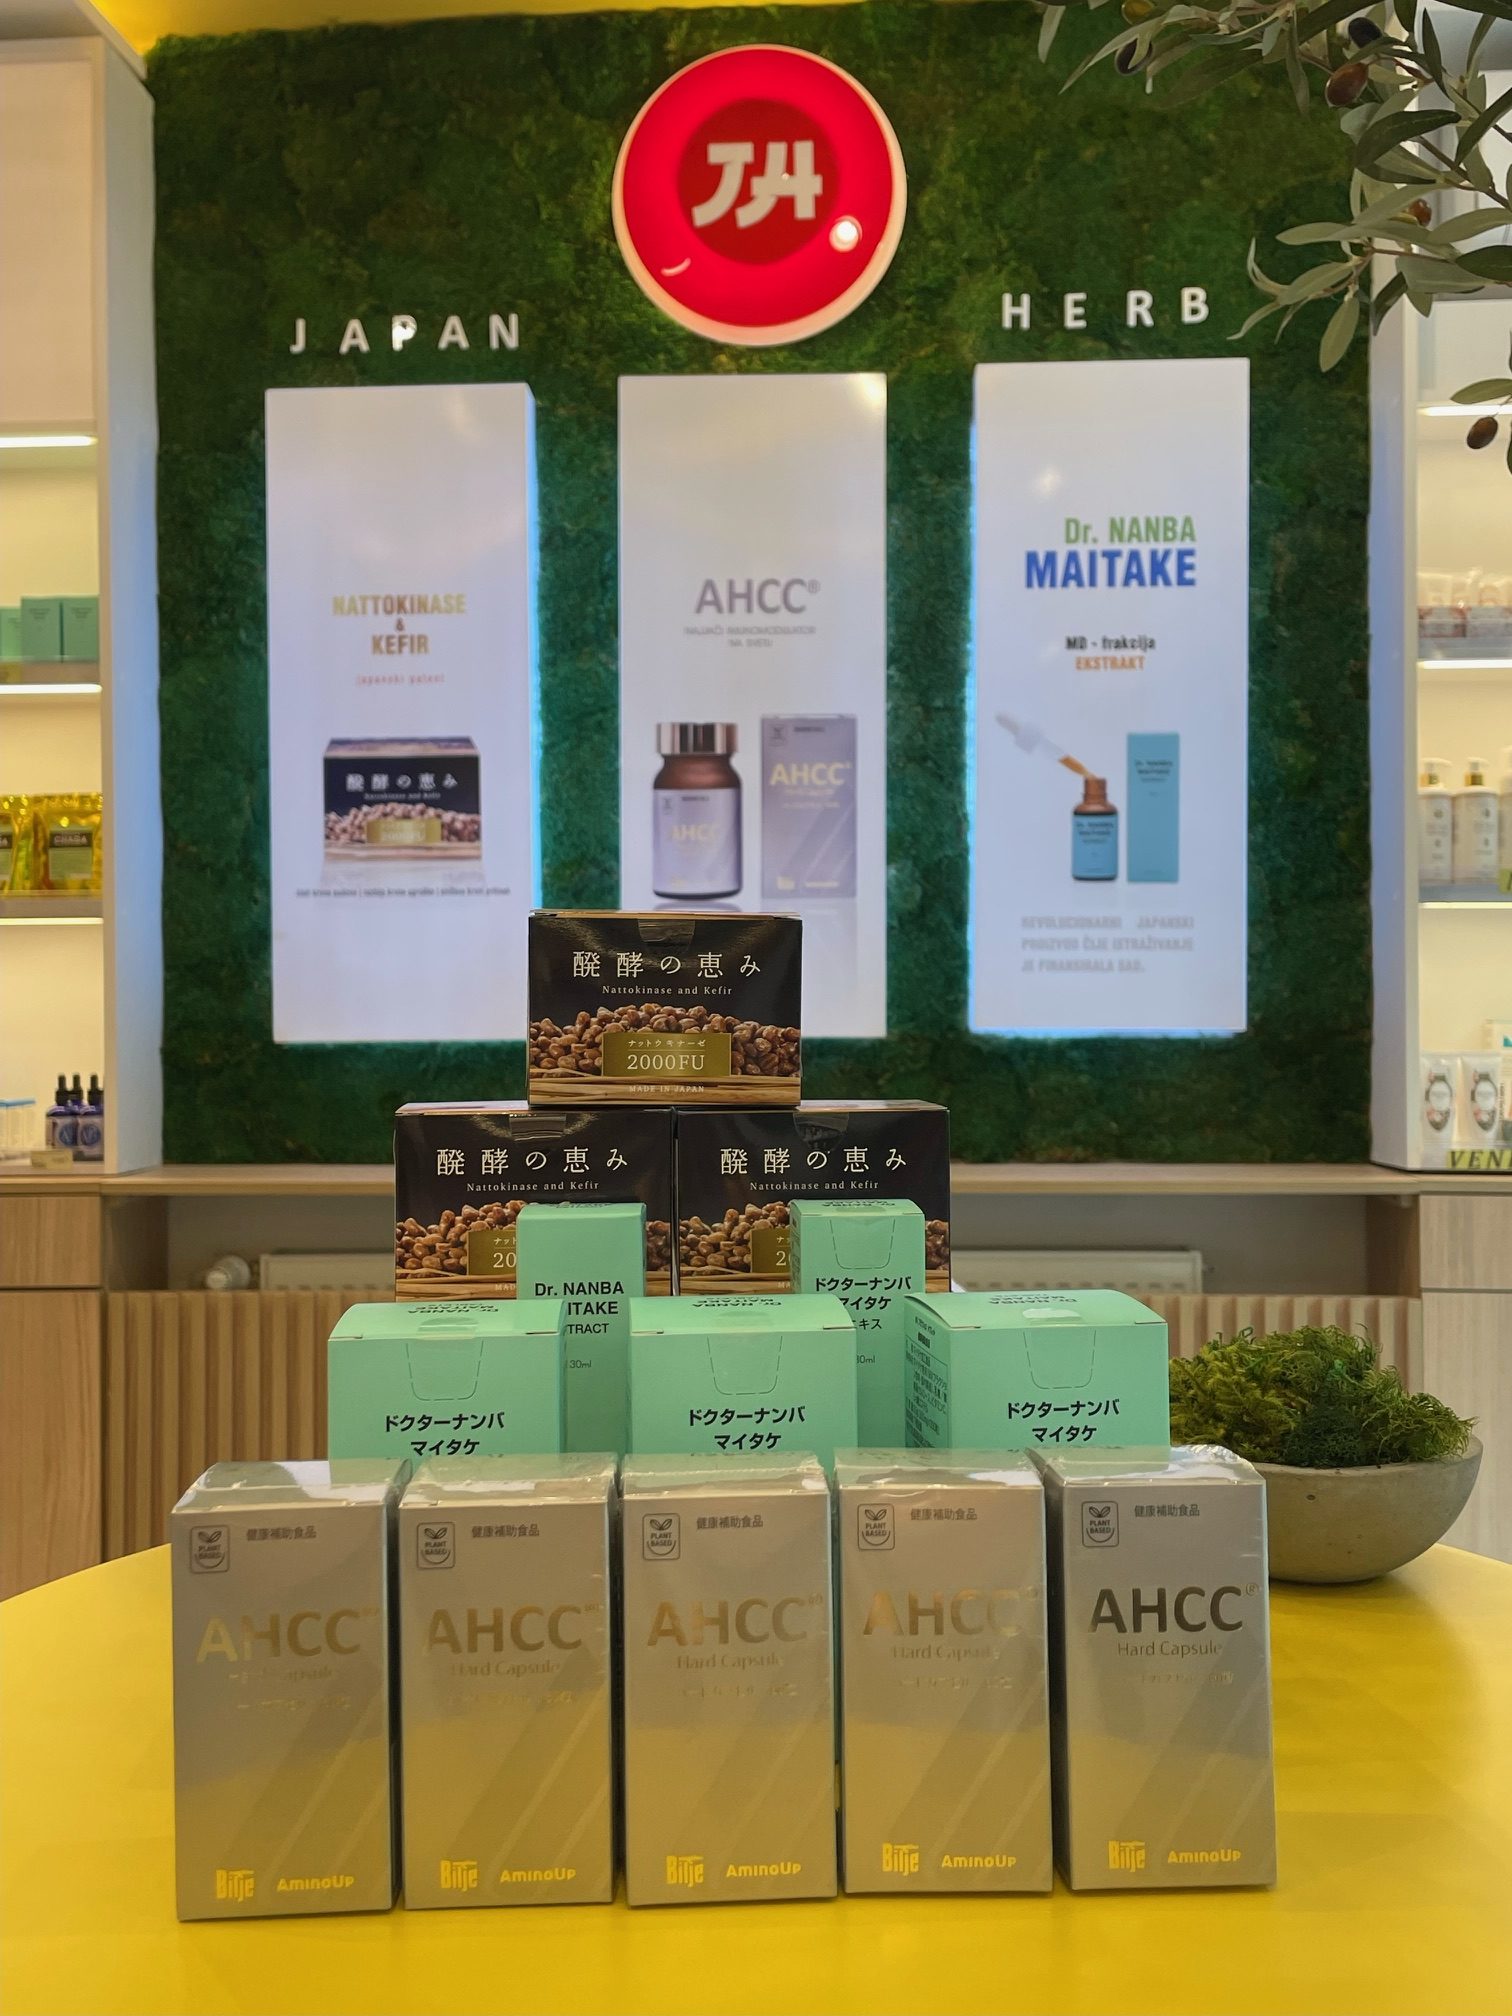 Originalni Japan herb proizvodi - za više informacija klinkinte na sliku